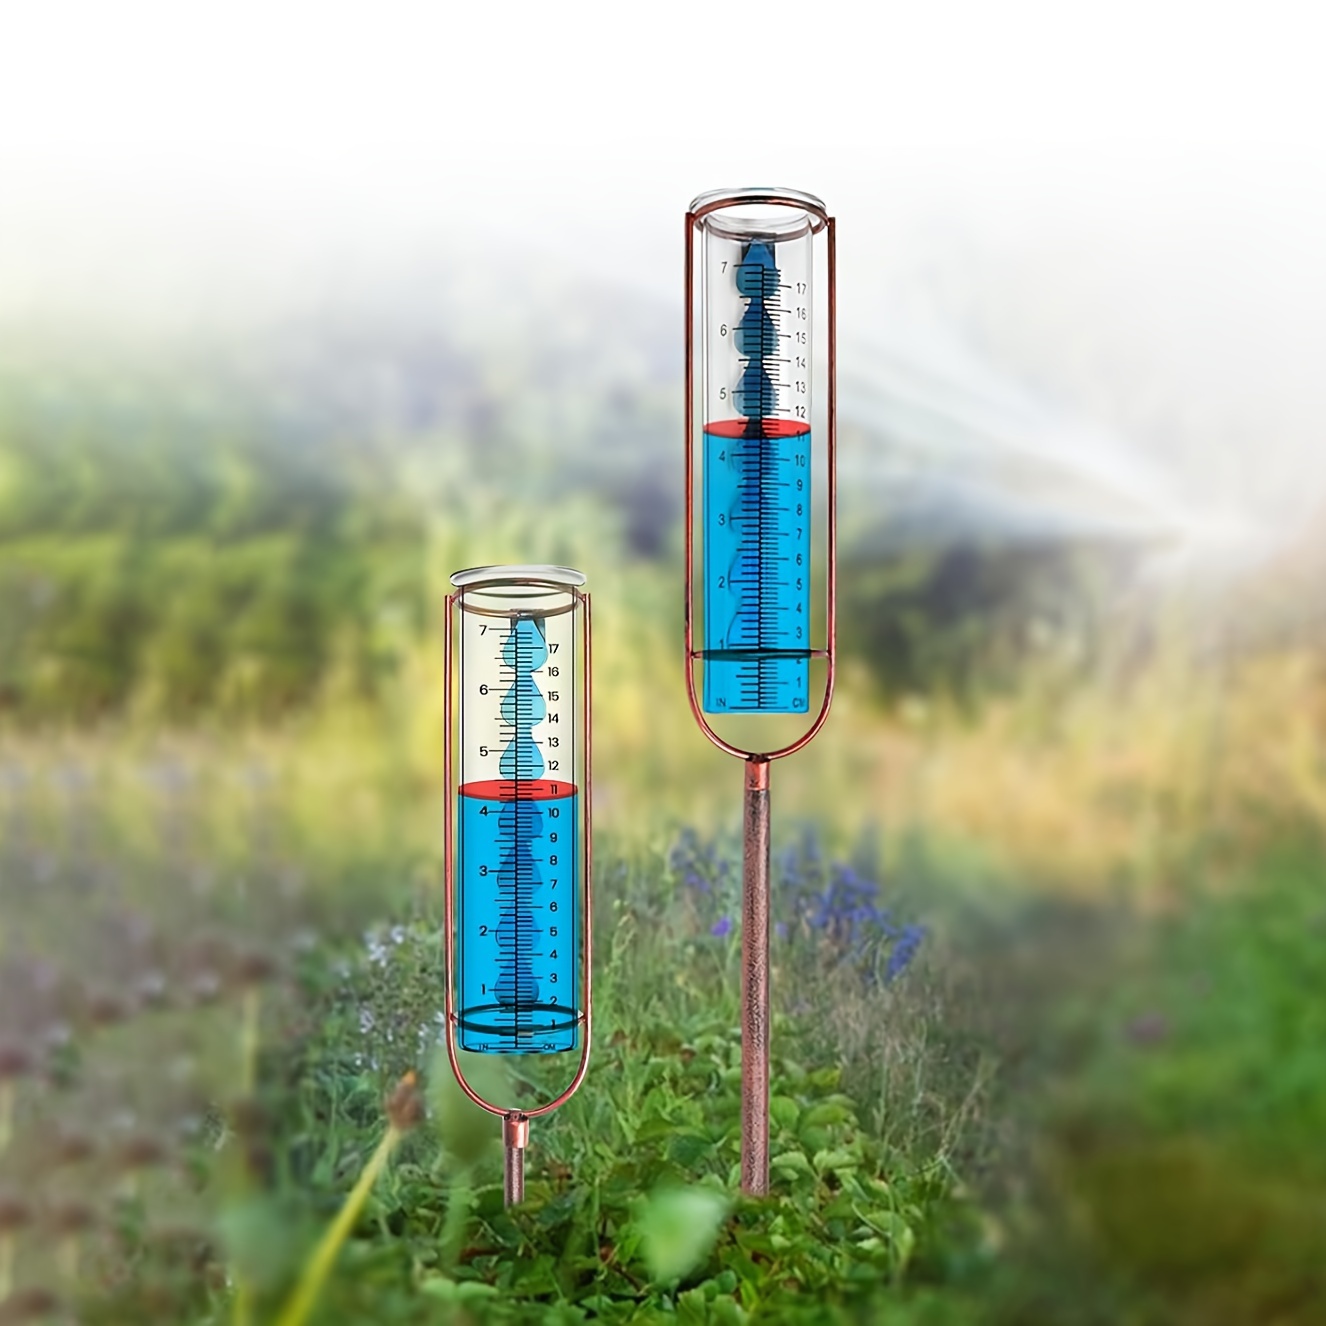  Medidor de lluvia para exteriores, medidor de lluvia de vidrio  de gran capacidad de 7 pulgadas para exteriores con estaca y junta, fácil  de leer, medidores de lluvia extraíbles para patio